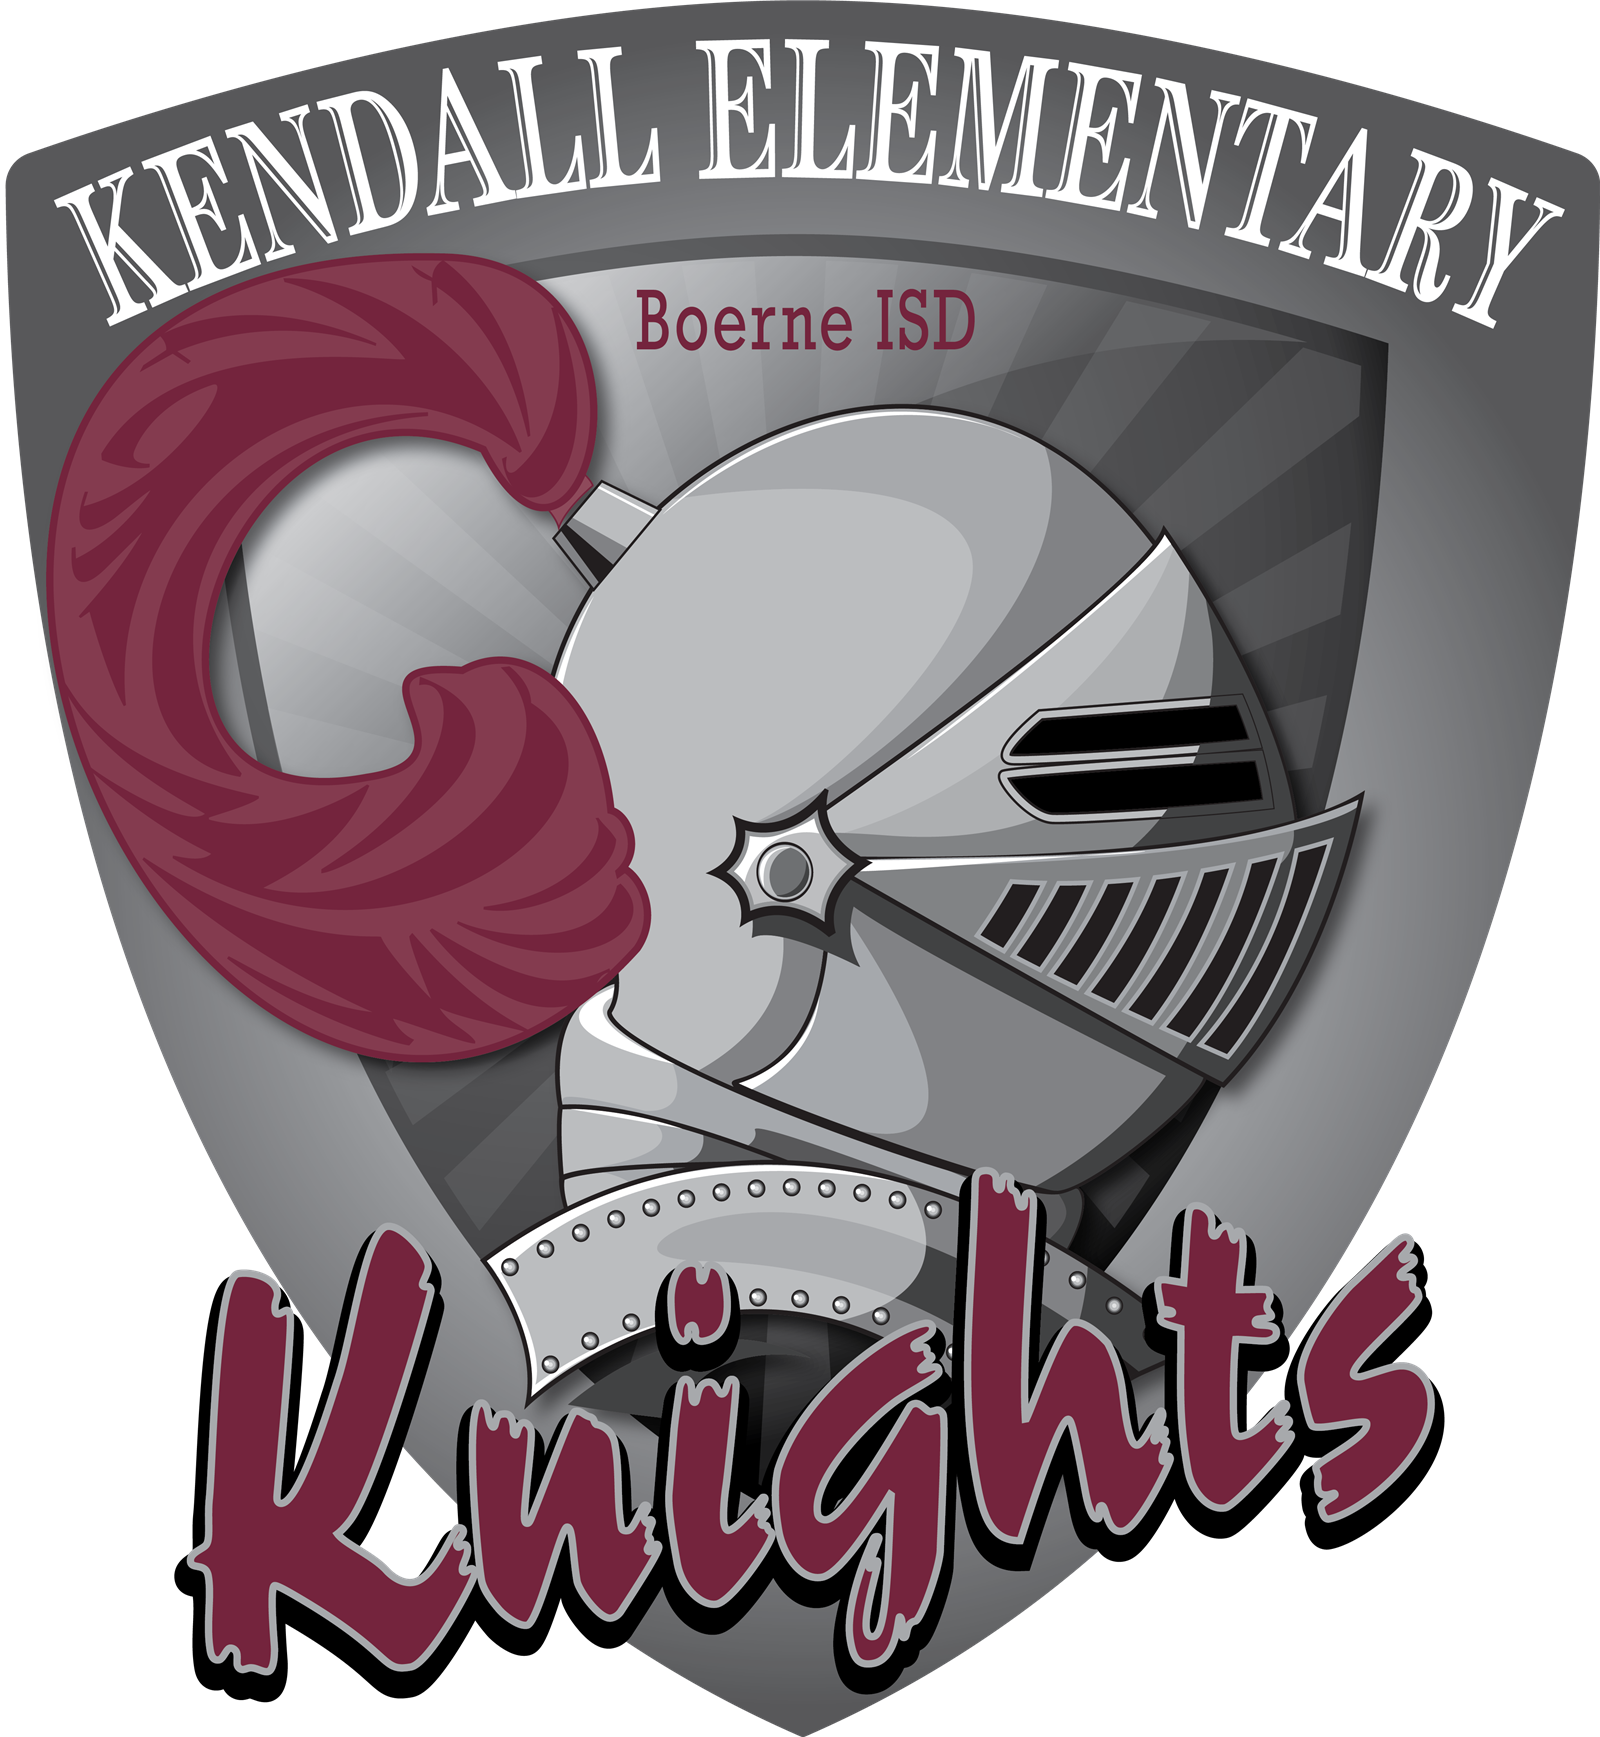  Knight's logo